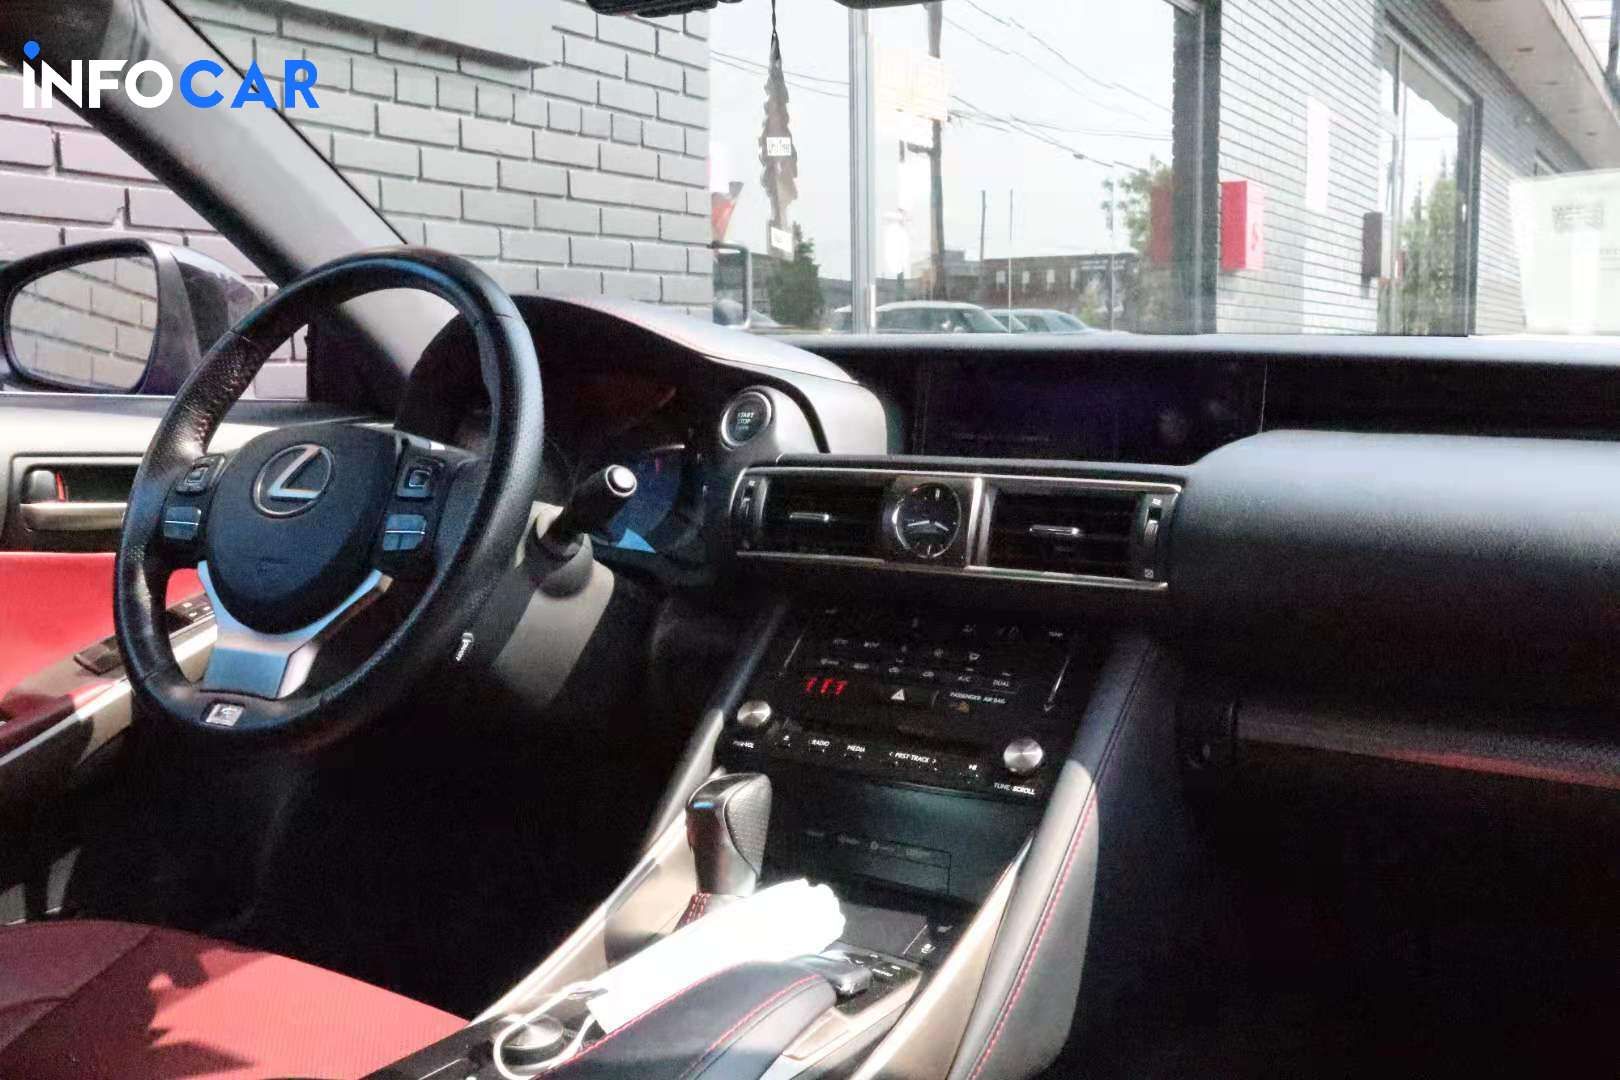 2018 Lexus IS 350 - INFOCAR - Toronto Auto Trading Platform